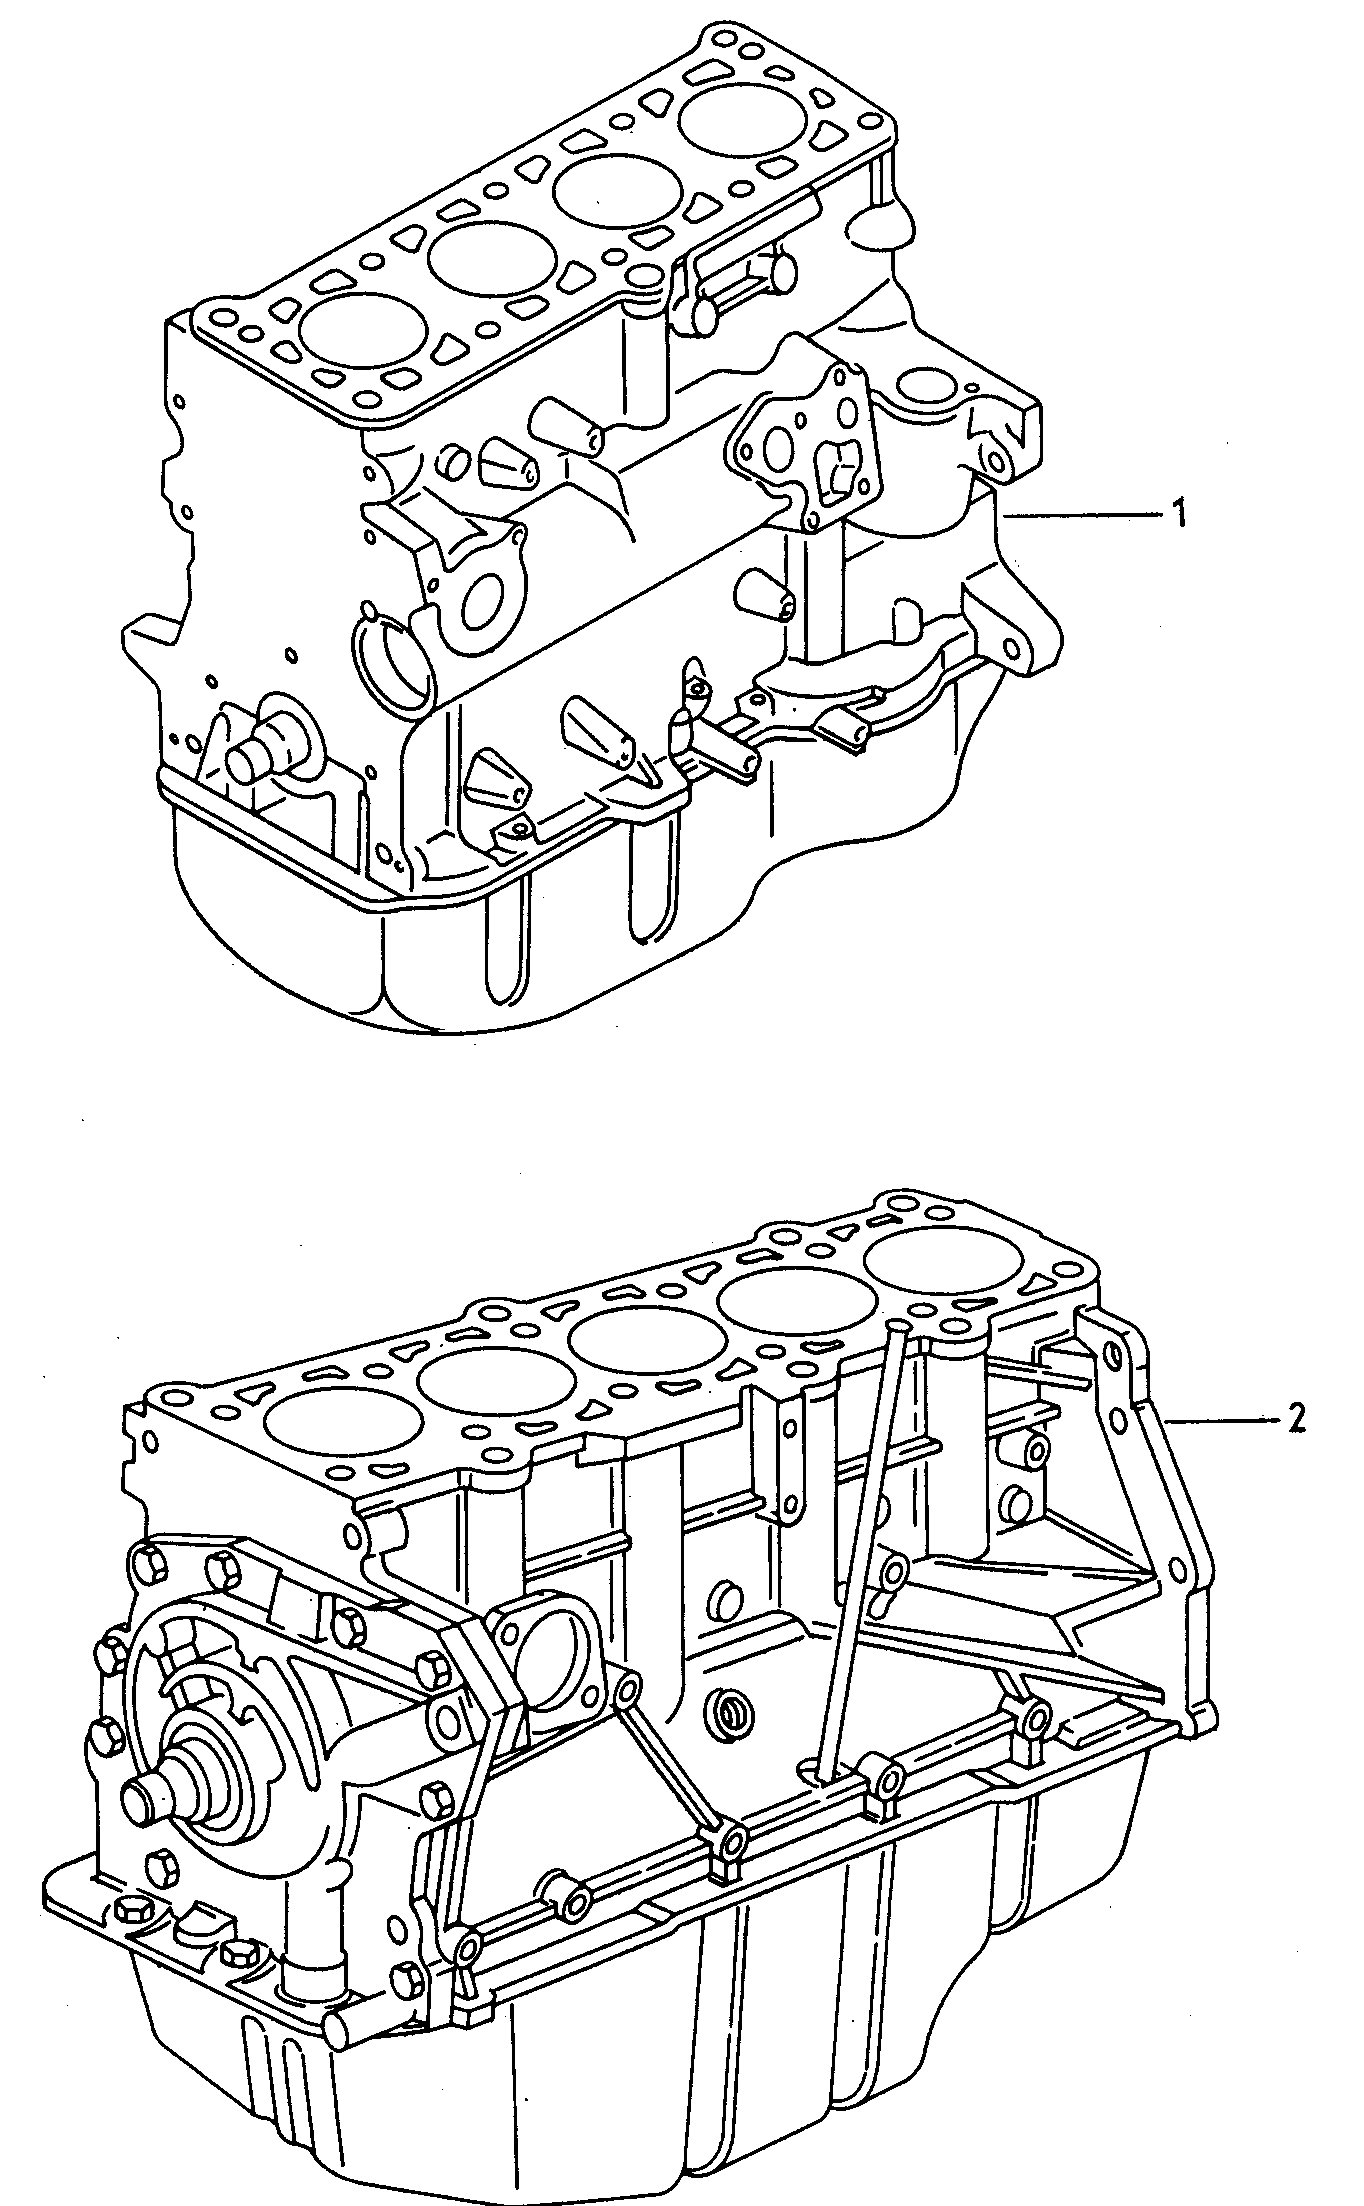 motor aligerado con ciguenal,
pistones,bomba y ca... - Audi 80/90/Avant(A80)  